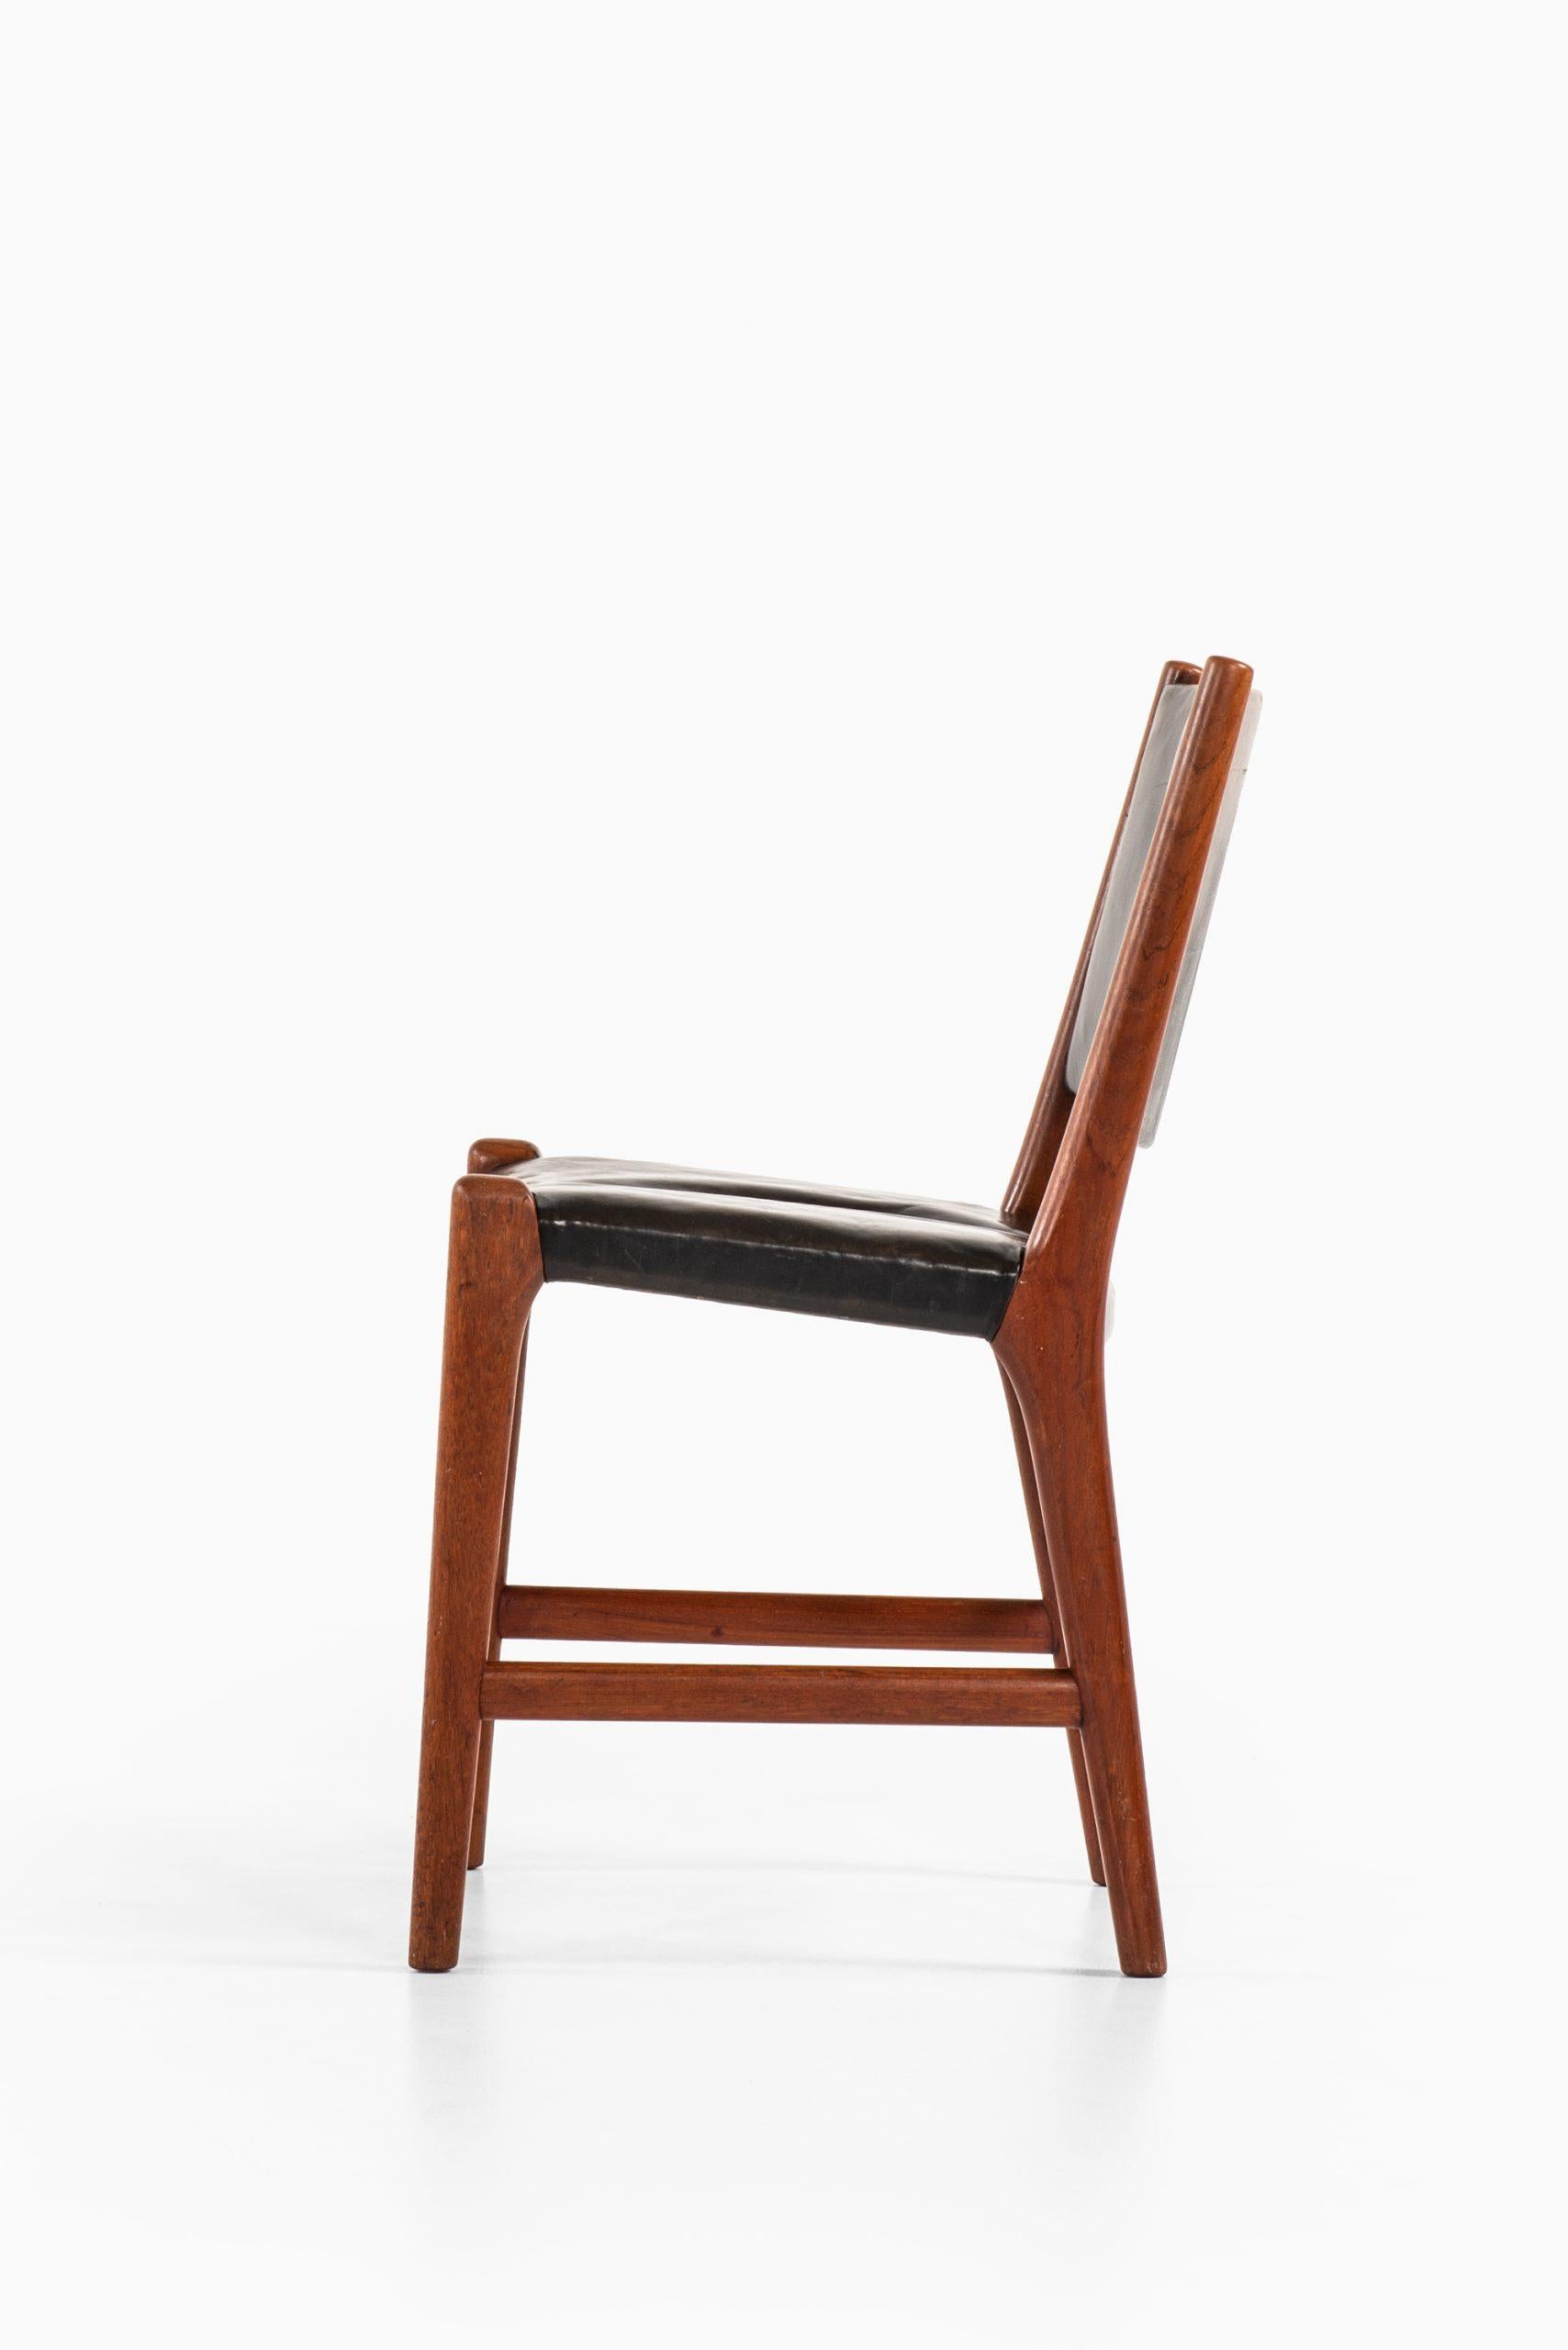 Hans Wegner Dining Chairs Variant of Model JH507 by Cabinetmaker Johannes Hansen For Sale 2